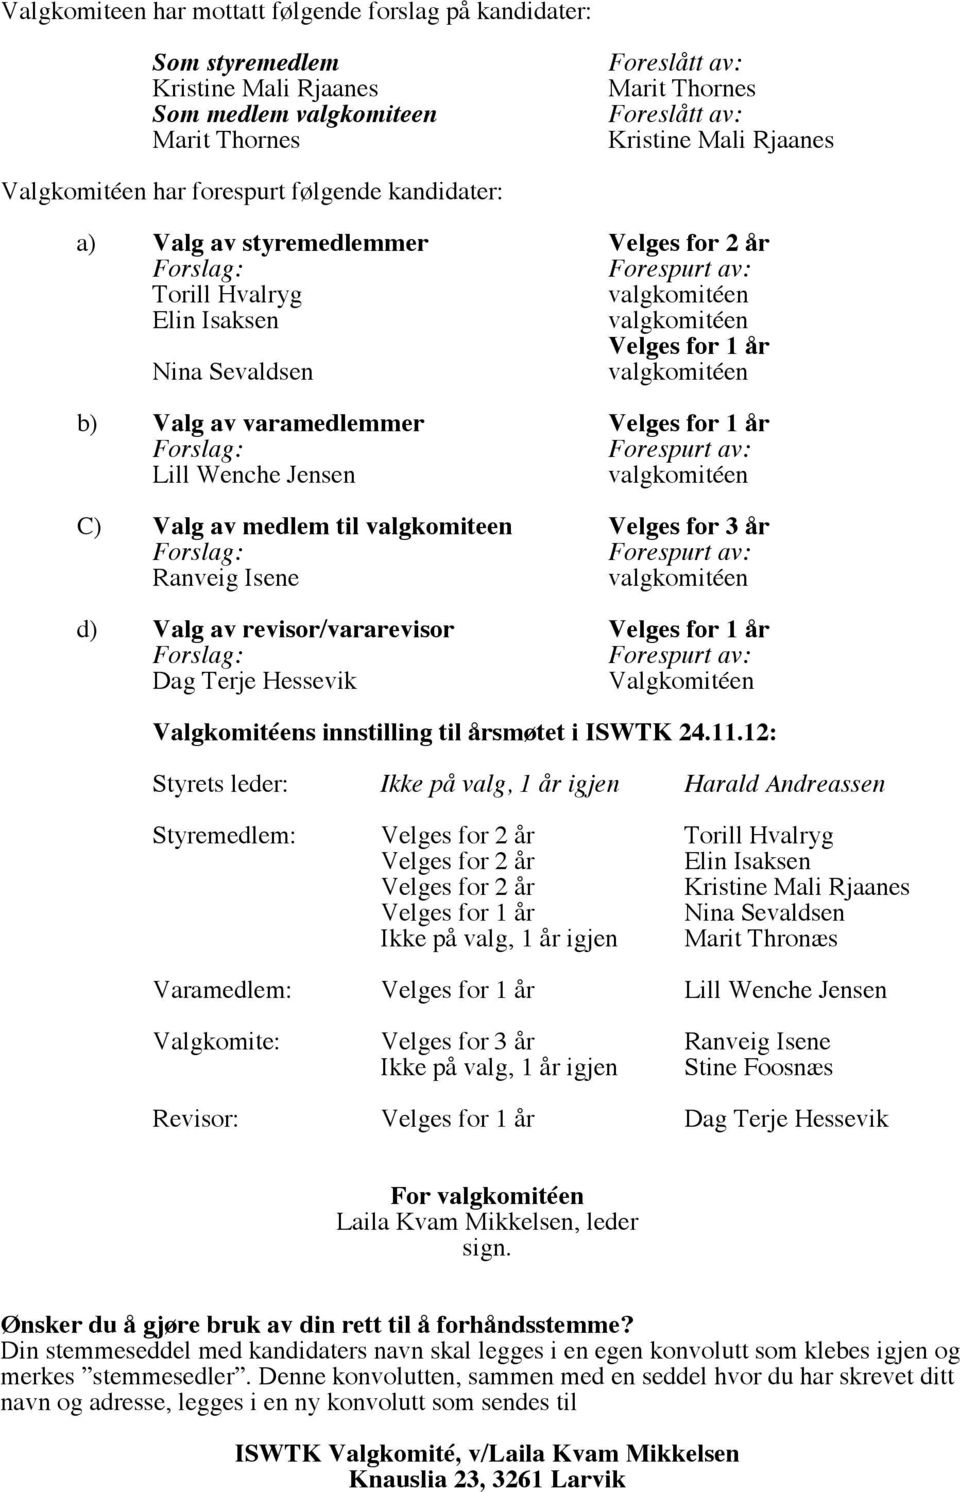 revisor/vararevisor Velges for 1 år Dag Terje Hessevik Valgkomitéen Valgkomitéens innstilling til årsmøtet i ISWTK 24.11.